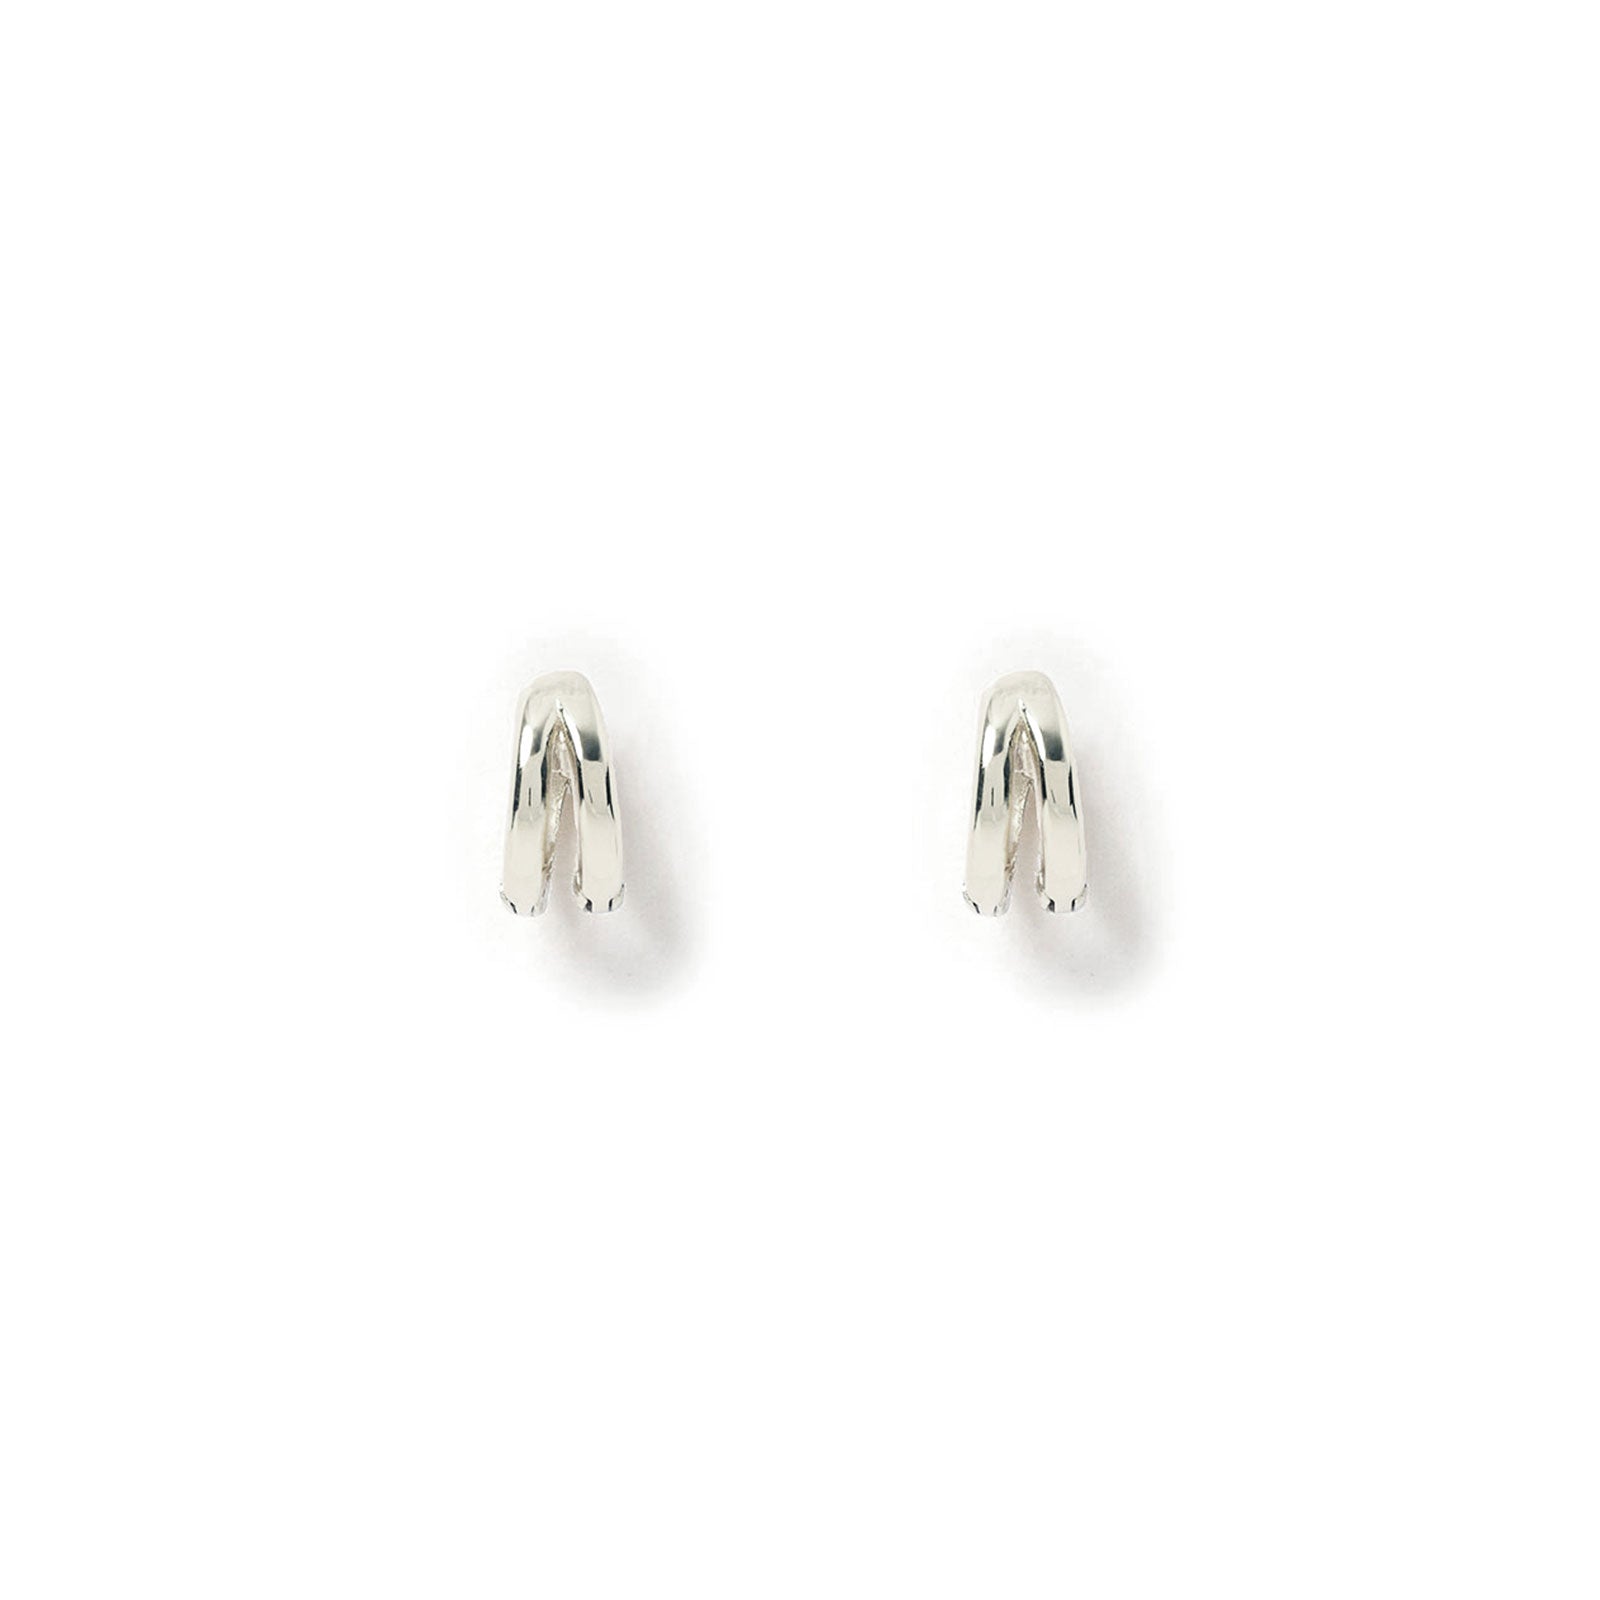 Jean Silver Huggie Earrings